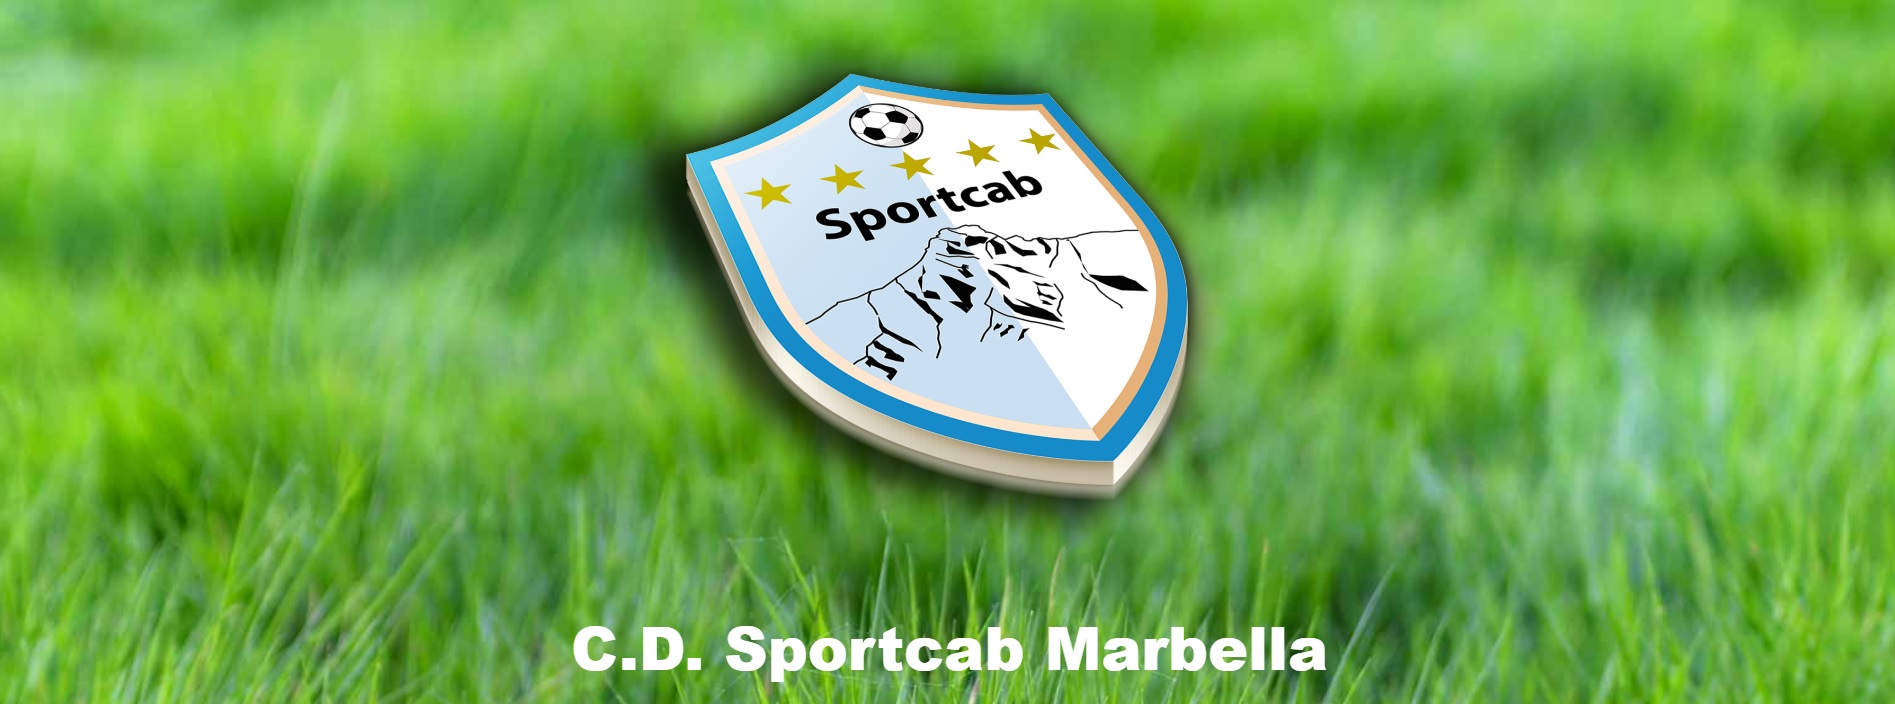 CD El Ejido 2012 acuerdo Sportcab Marbella